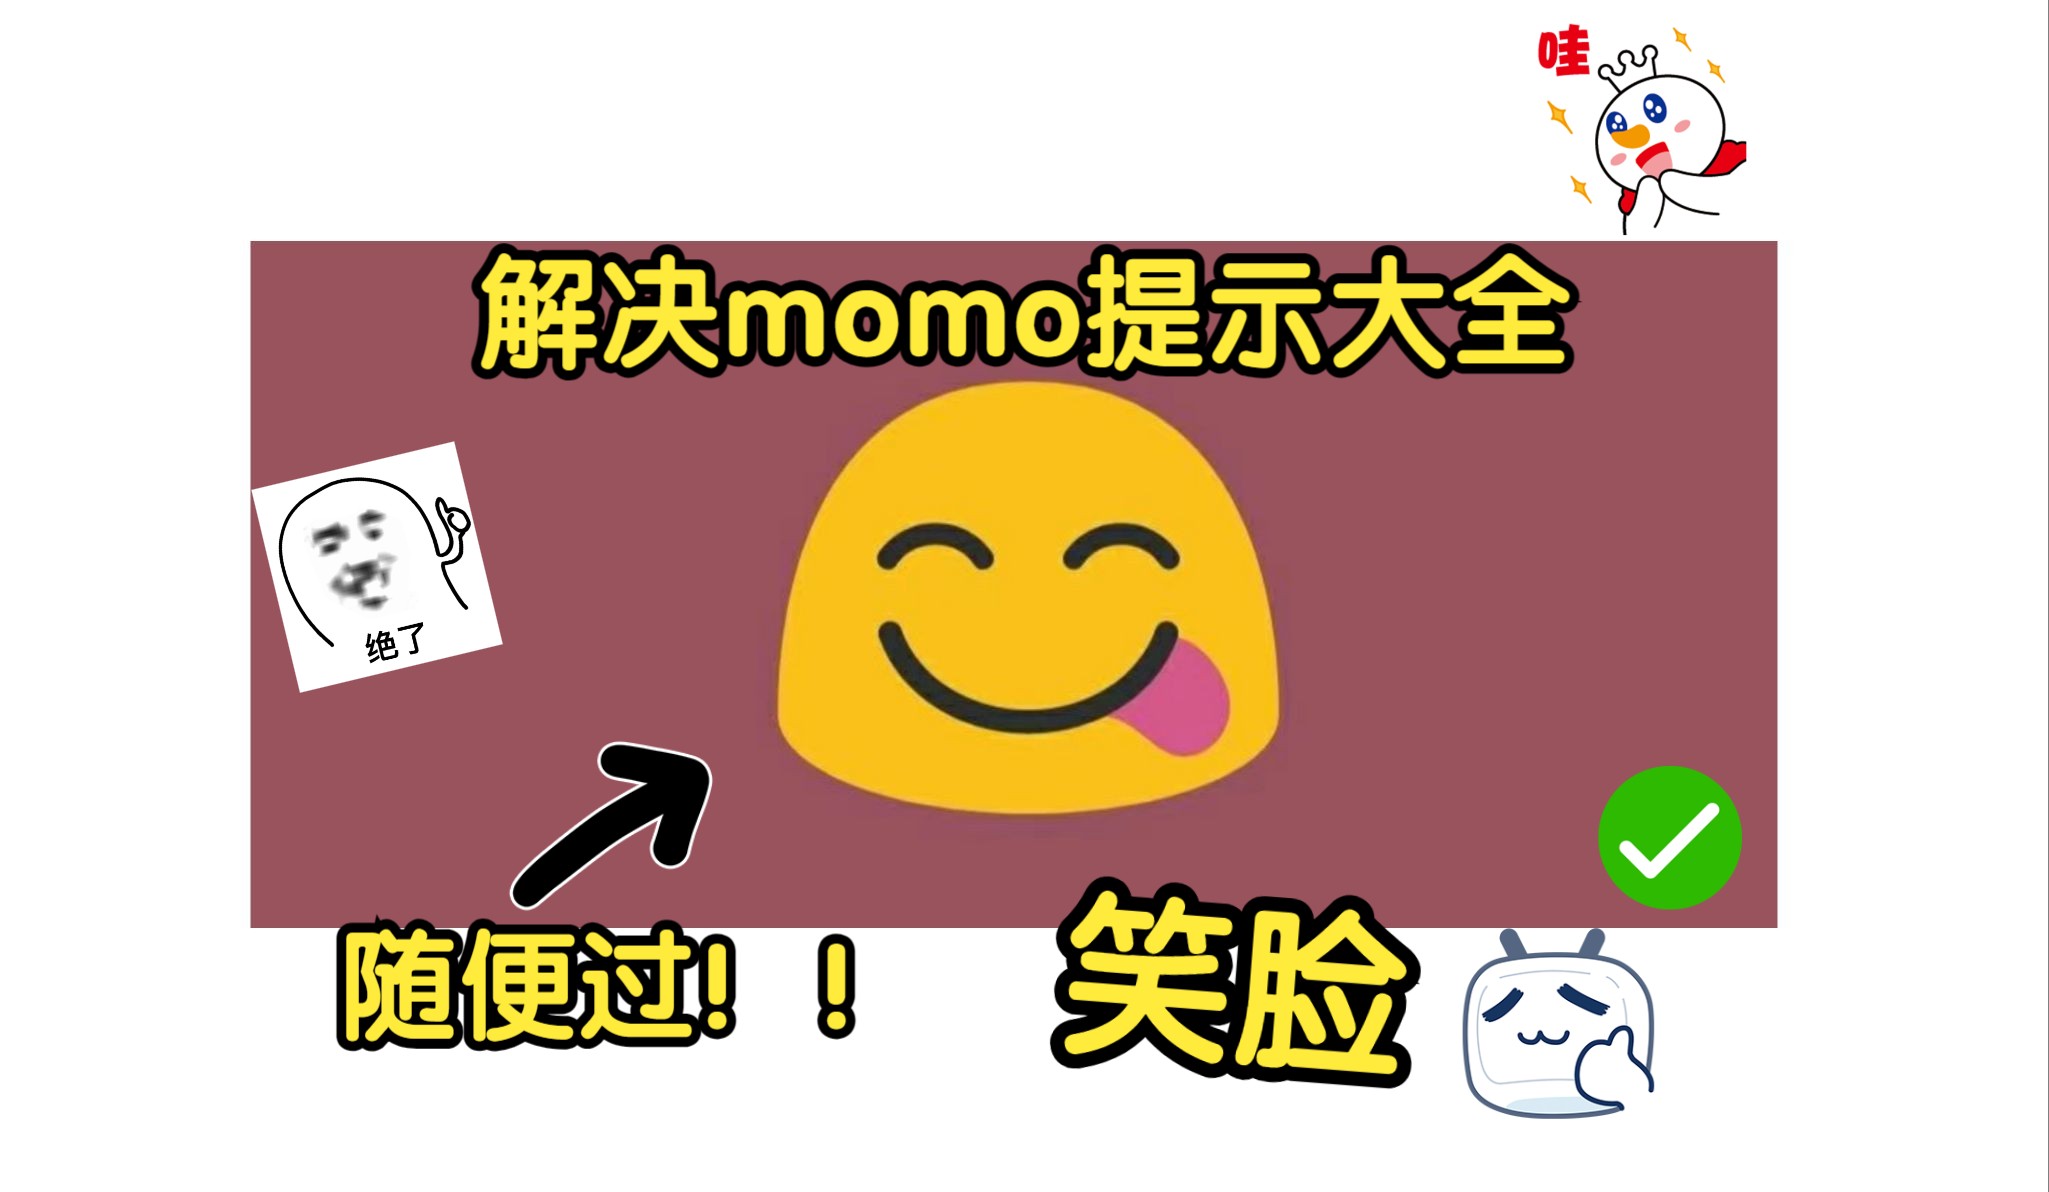 解决momo提示问题大全！！喂饭级教程！！momo检测轻松过！隐藏root教学！！！